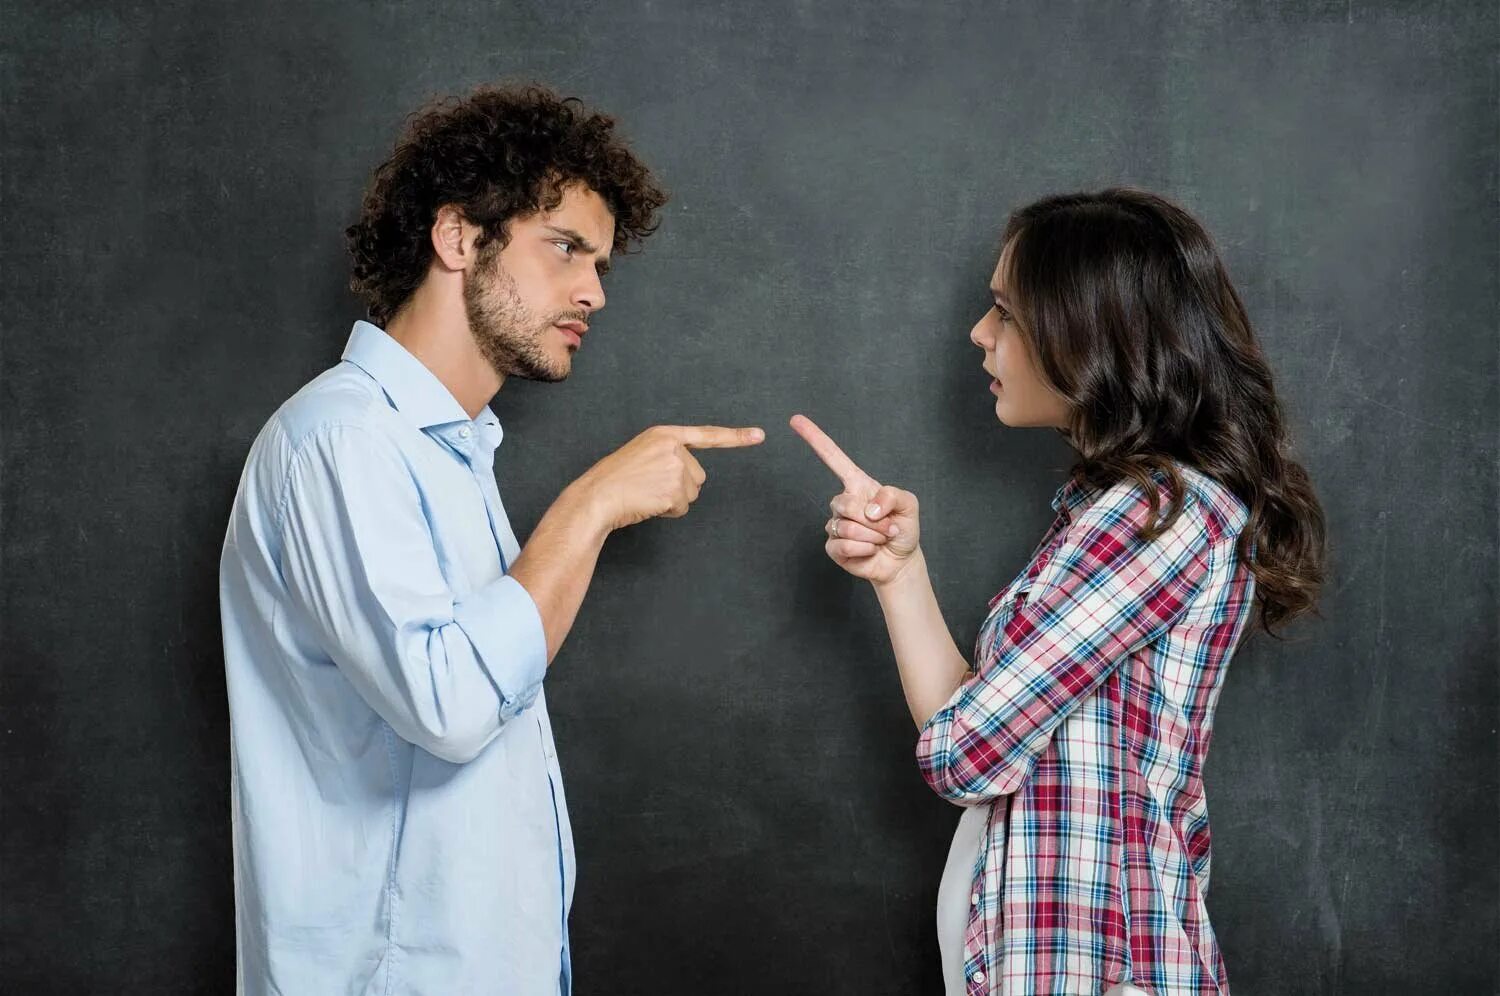 Конфликт. Люди спорят. Мужчина и женщина спорят. Спор между мужчиной и женщиной. Ссориться вопрос